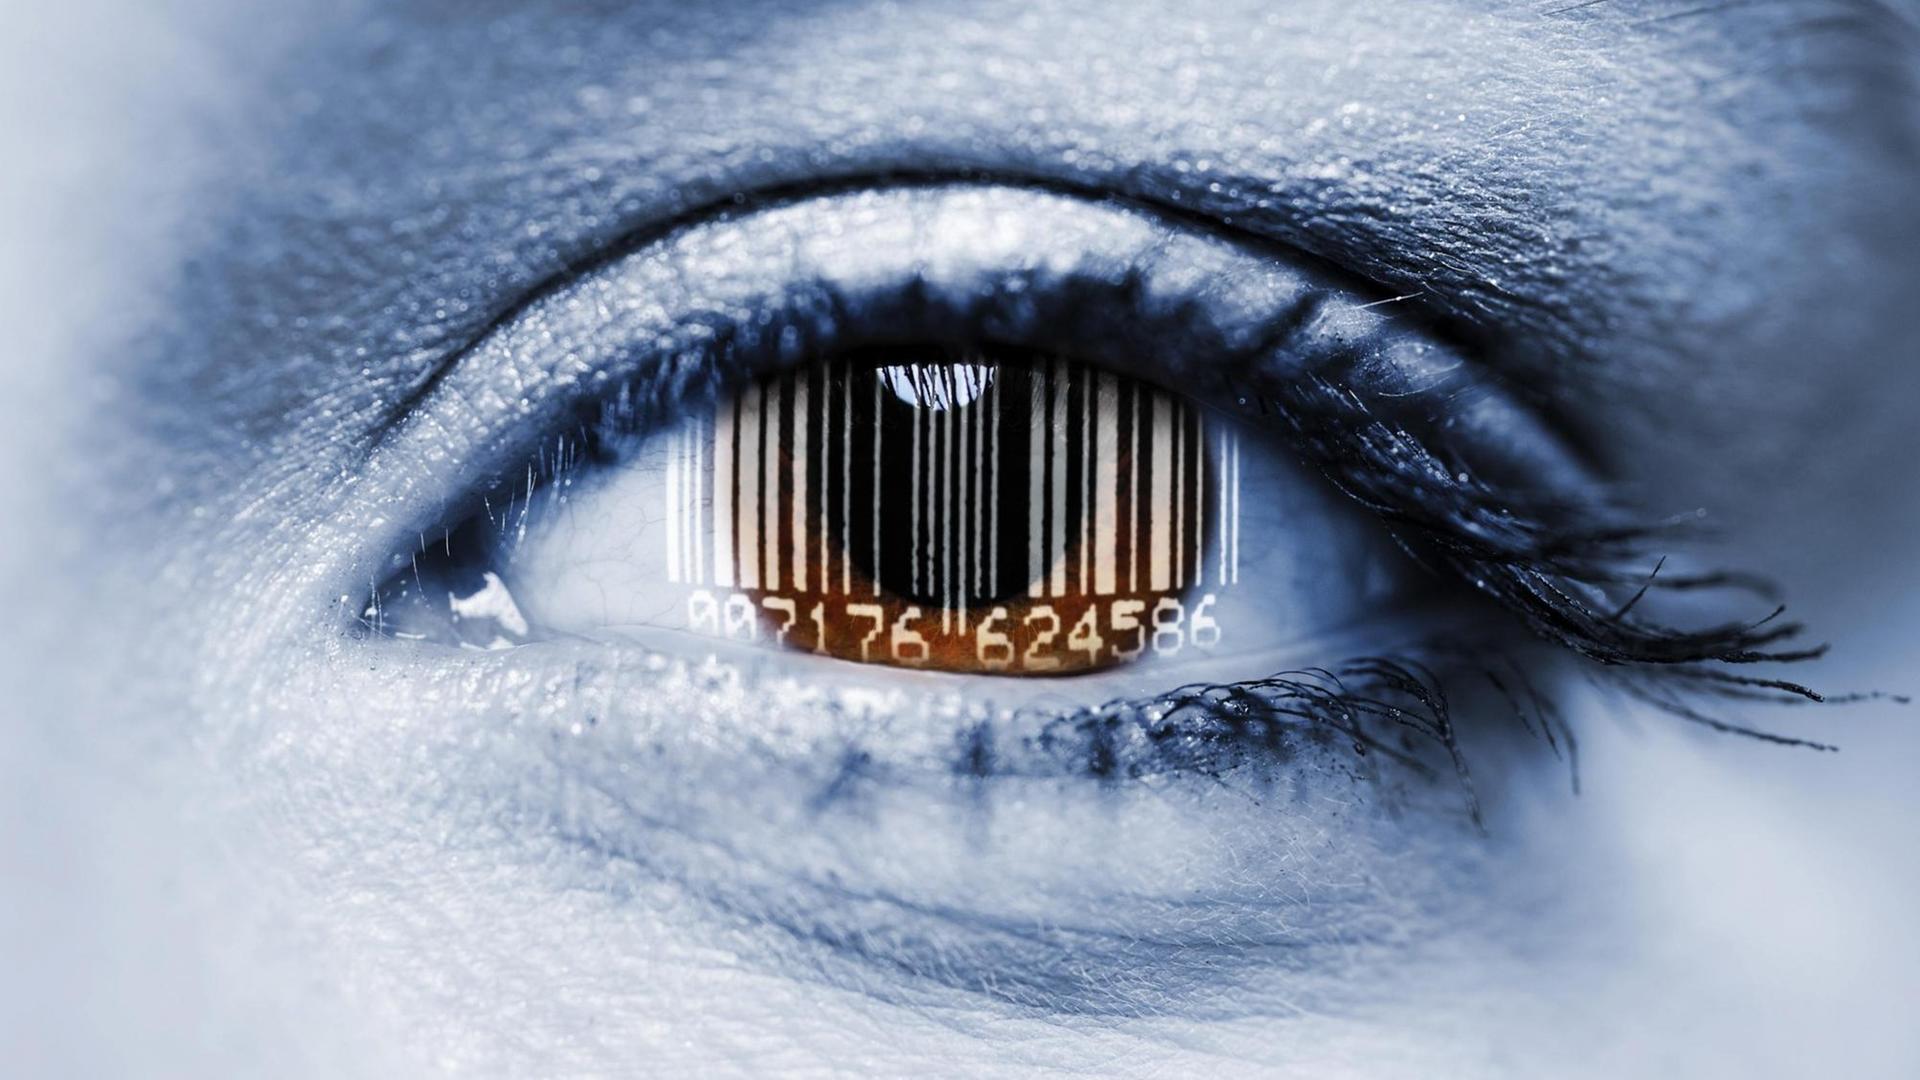 Ein Barcode spiegelt sich in einem Auge